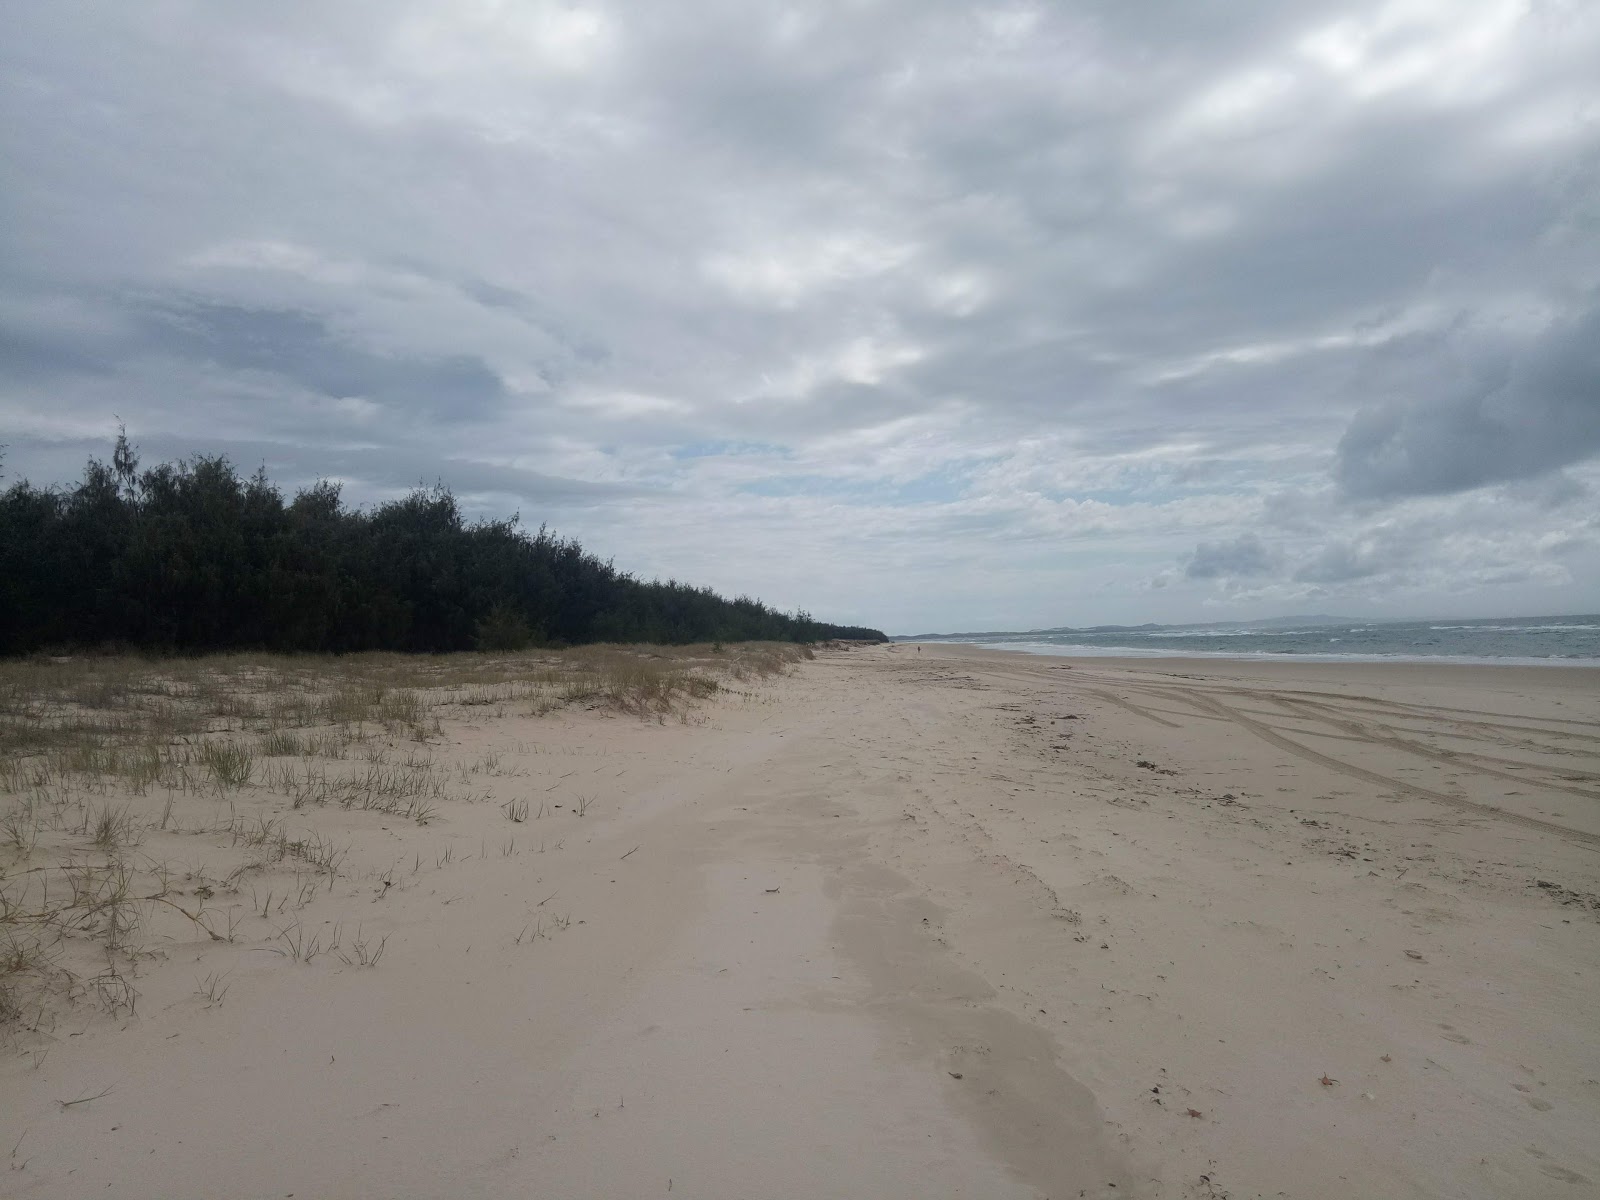 Minjerribah Camping Beach'in fotoğrafı çok temiz temizlik seviyesi ile